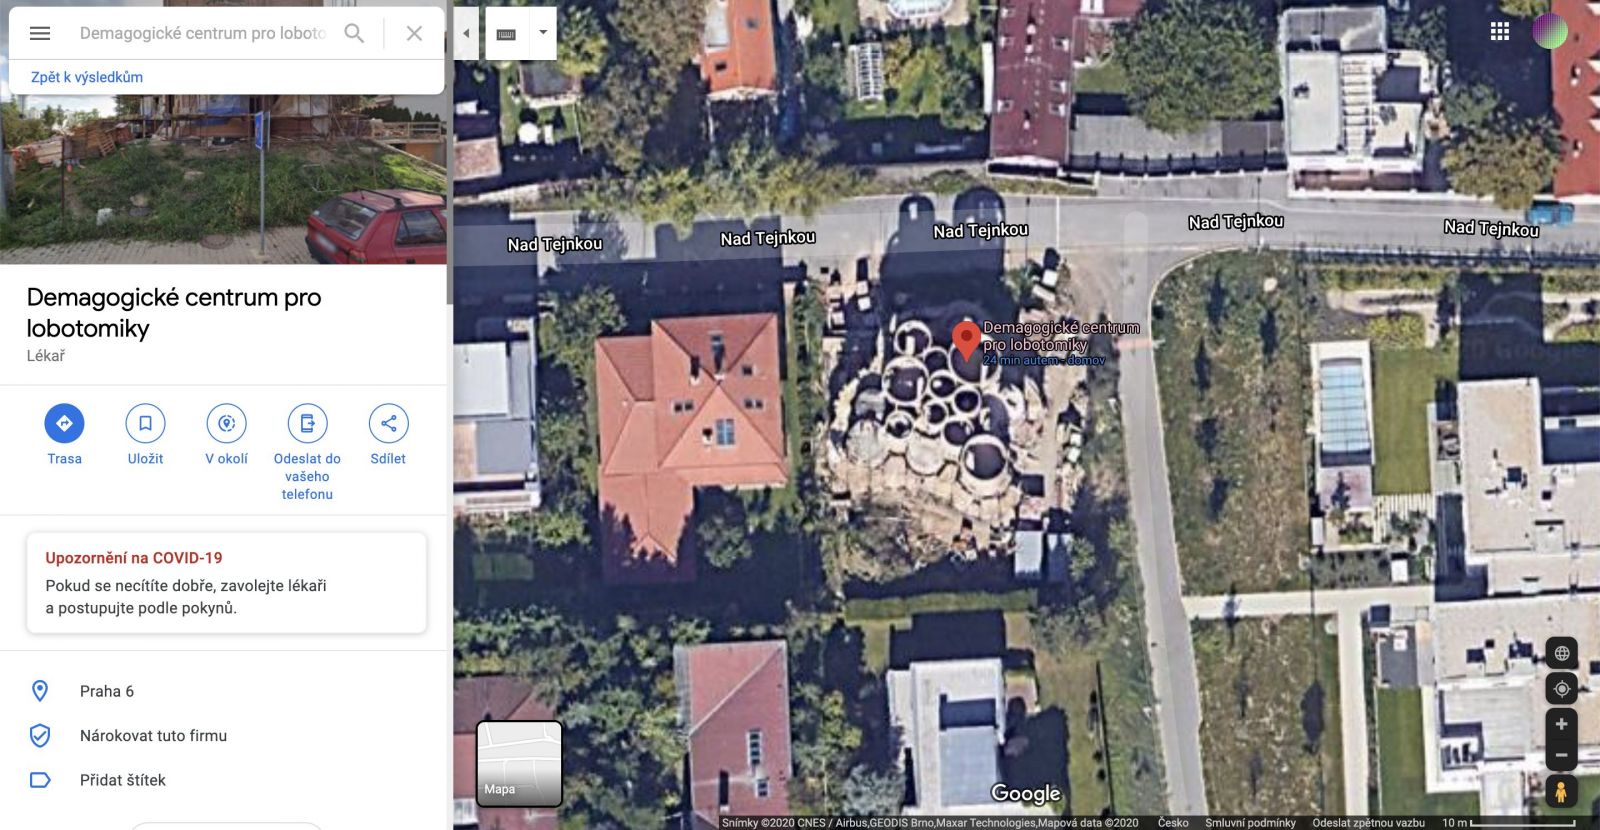 Dům Tomia Okamury na Google mapách někdo přejmenoval. Nejdříve na Takešiho hrad, pak na Demagogické centrum pro lobotomiky